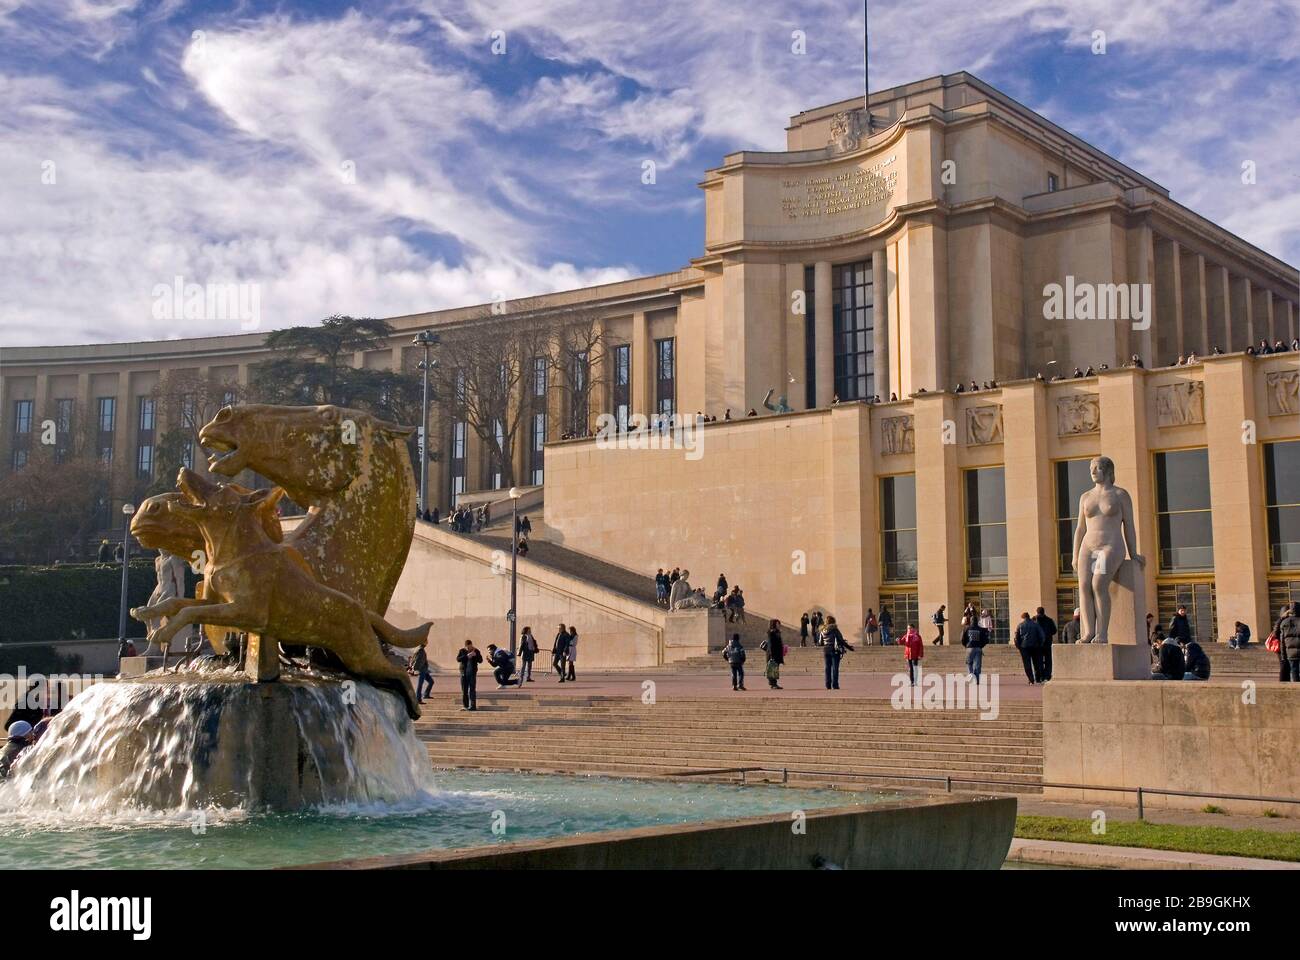 Paris: The 'Passy' wing of the Palais de Chaillot on Place du Trocadéro Stock Photo